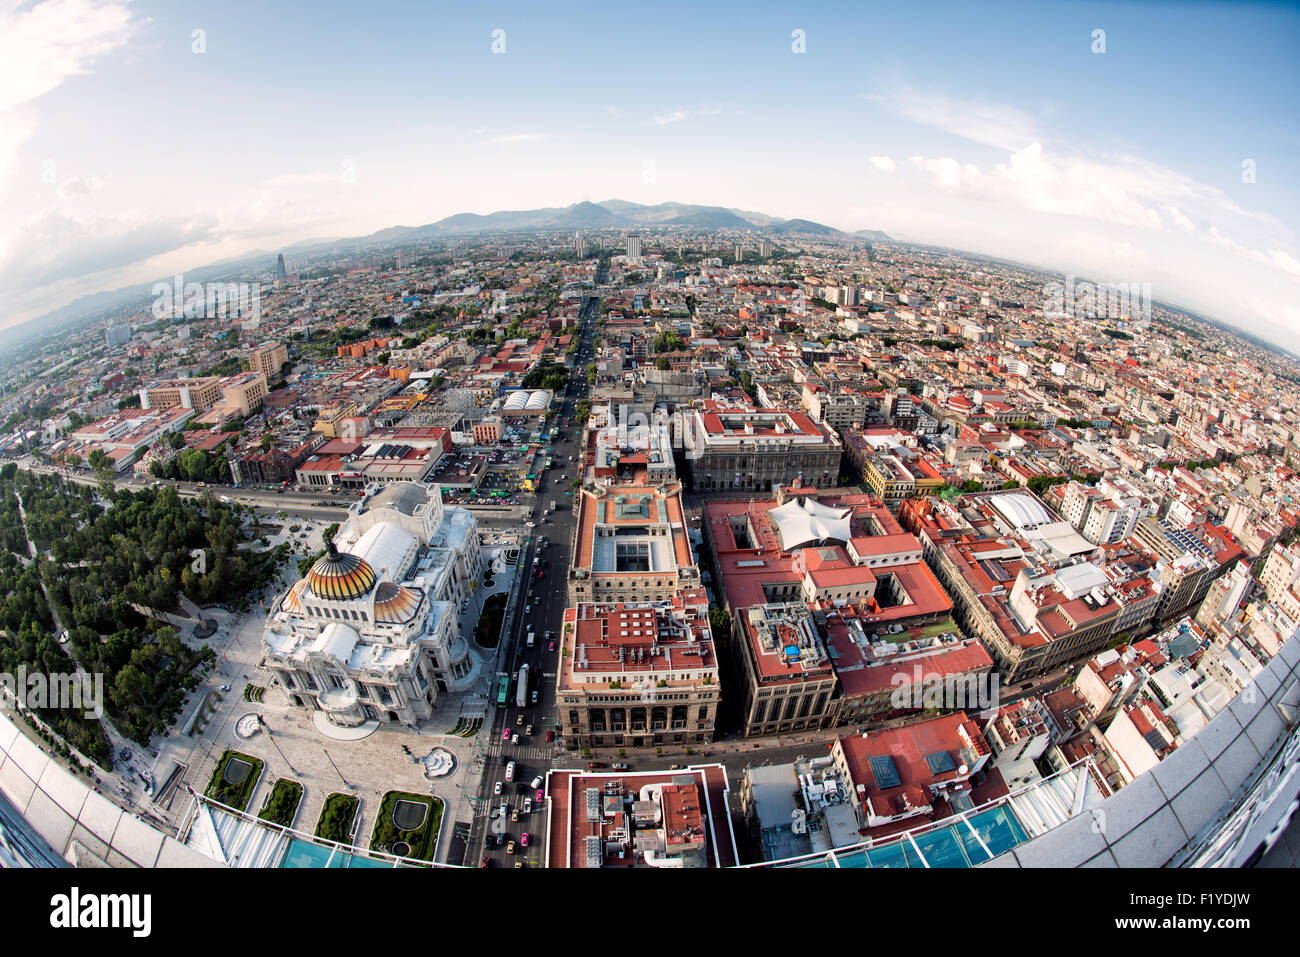 MEXIKO-STADT, Mexiko - ein Luftblick auf Mexiko-Stadt, der die weitläufige urbane Landschaft vom Gipfel des Torre Latinoamericana zeigt. Dieser legendäre Wolkenkratzer, einst der höchste in Lateinamerika, bietet unvergleichliche Perspektiven auf die weitläufige und komplizierte Stadt. Stockfoto